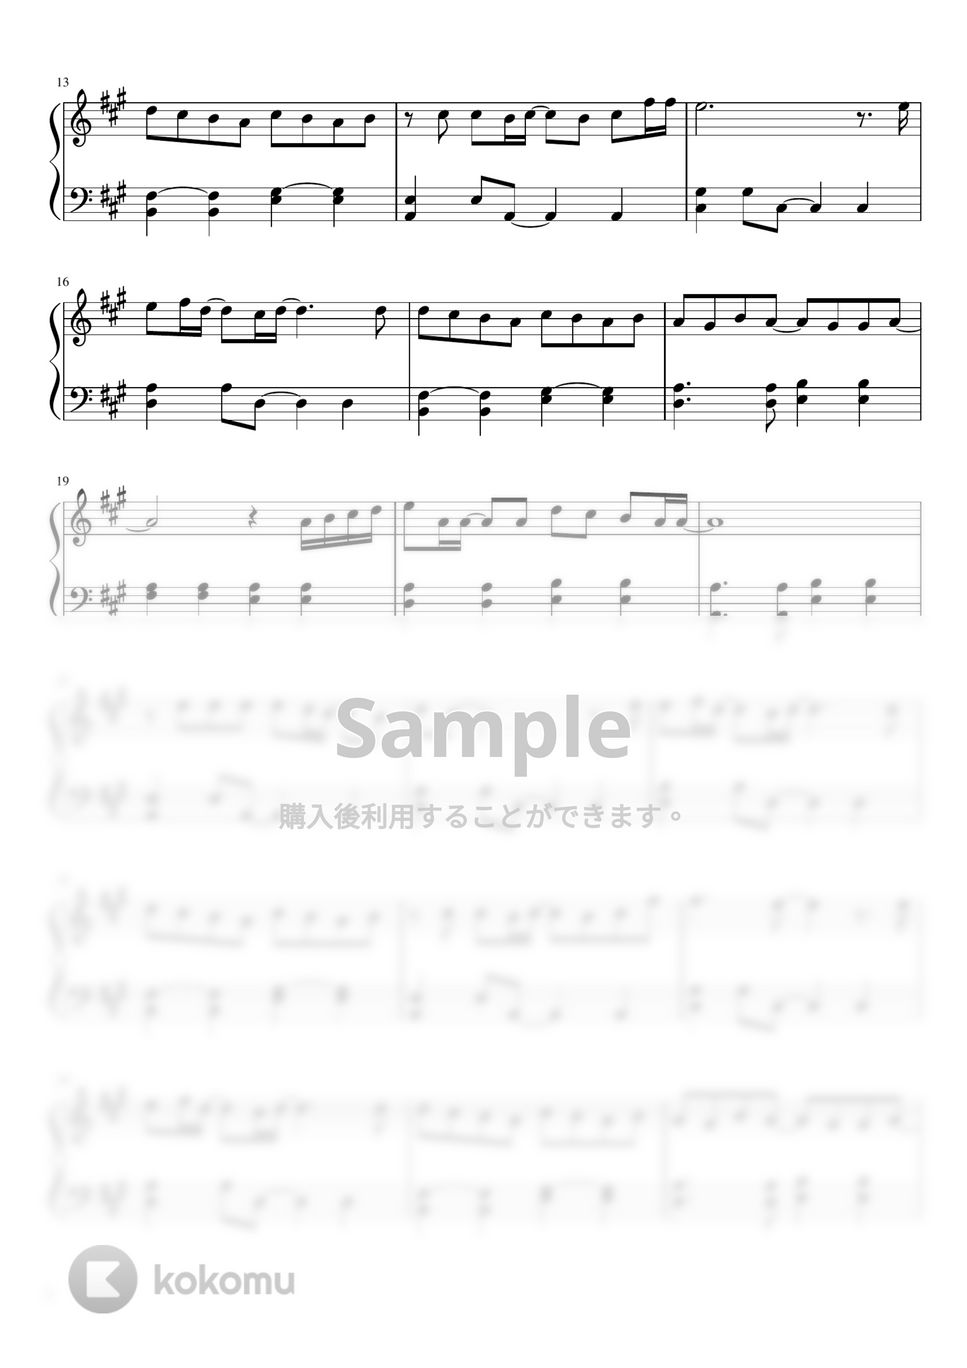 あいみょん - ハルノヒ by pianon楽譜